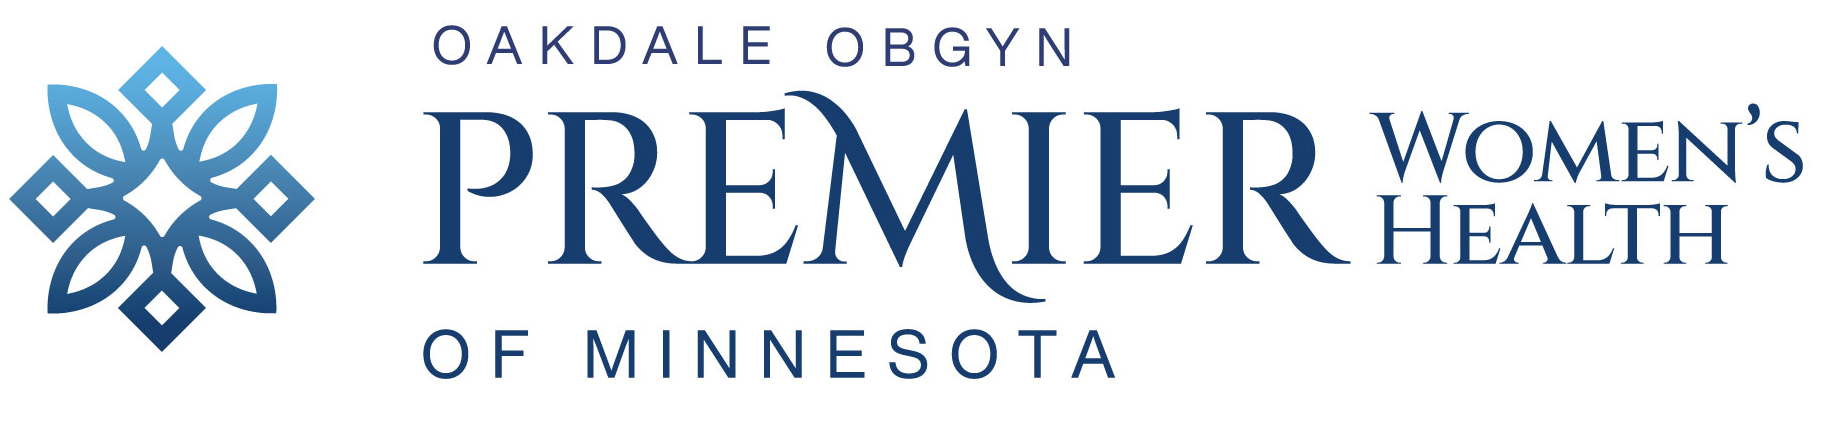 Oakdale OBGYN Premier Women's Health of Minnesota